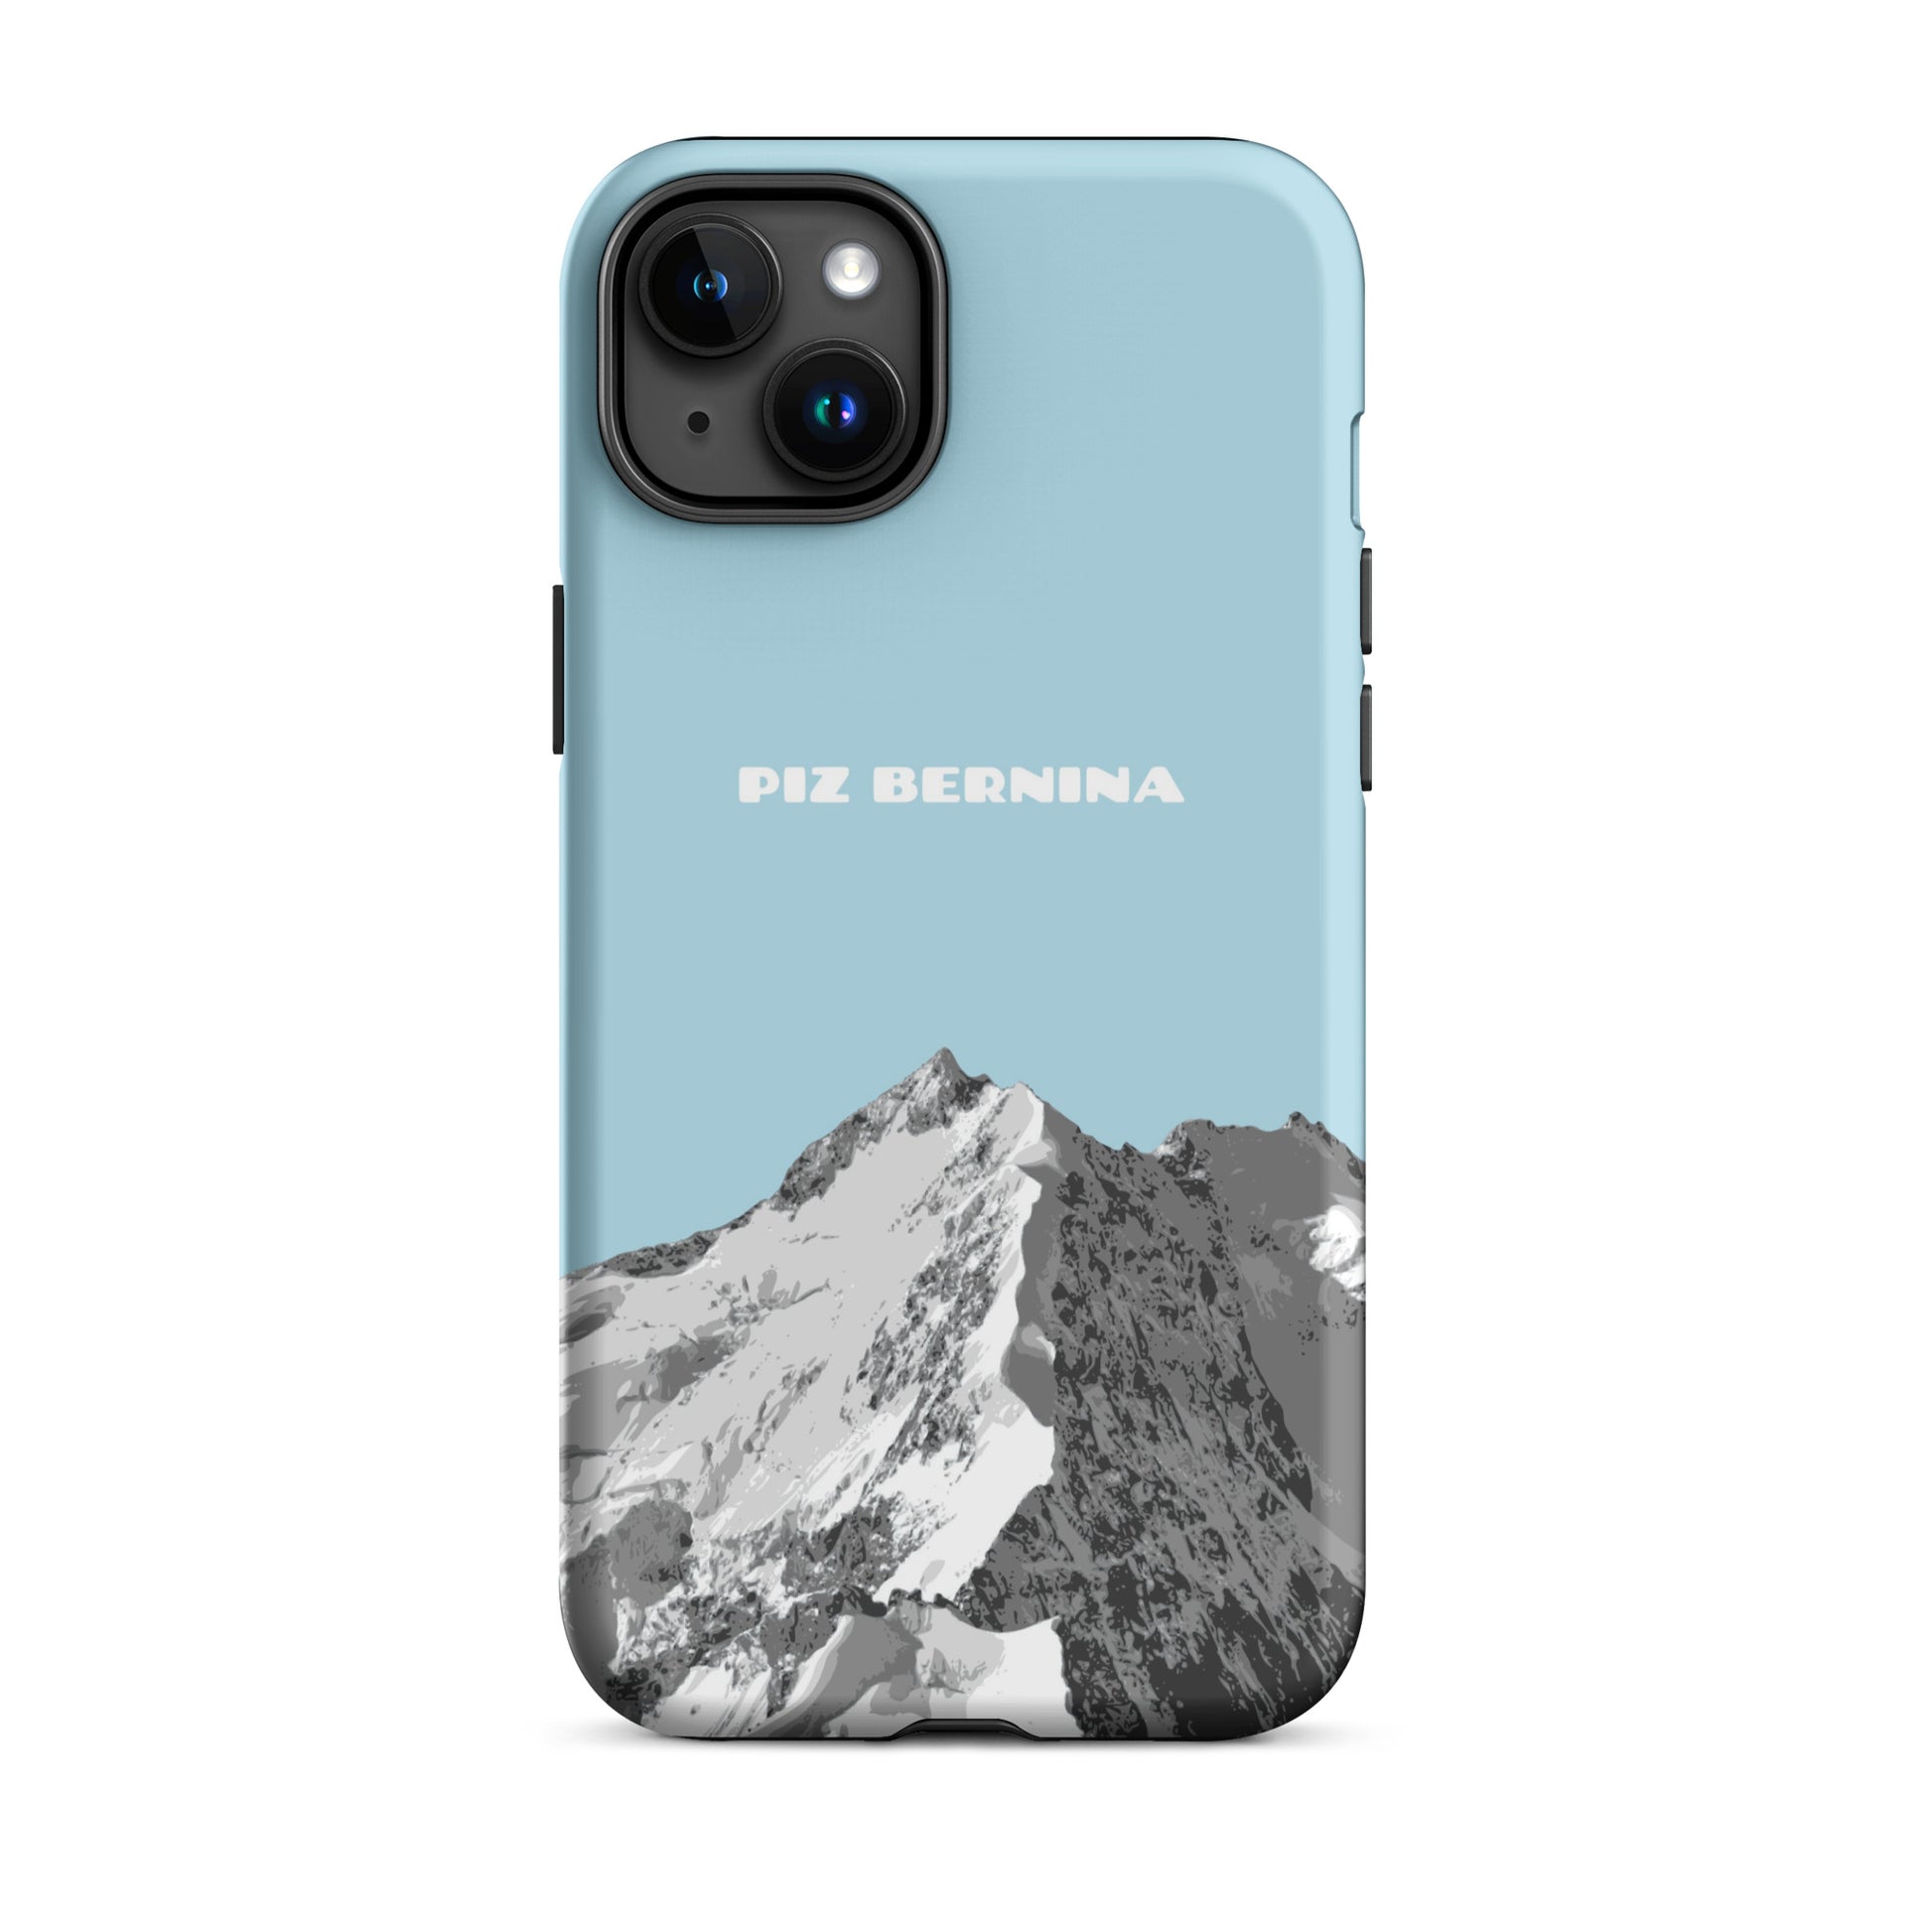 Hülle für das iPhone 15 Plus von Apple in der Farbe Hellblau, dass den Piz Bernina in Graubünden zeigt.